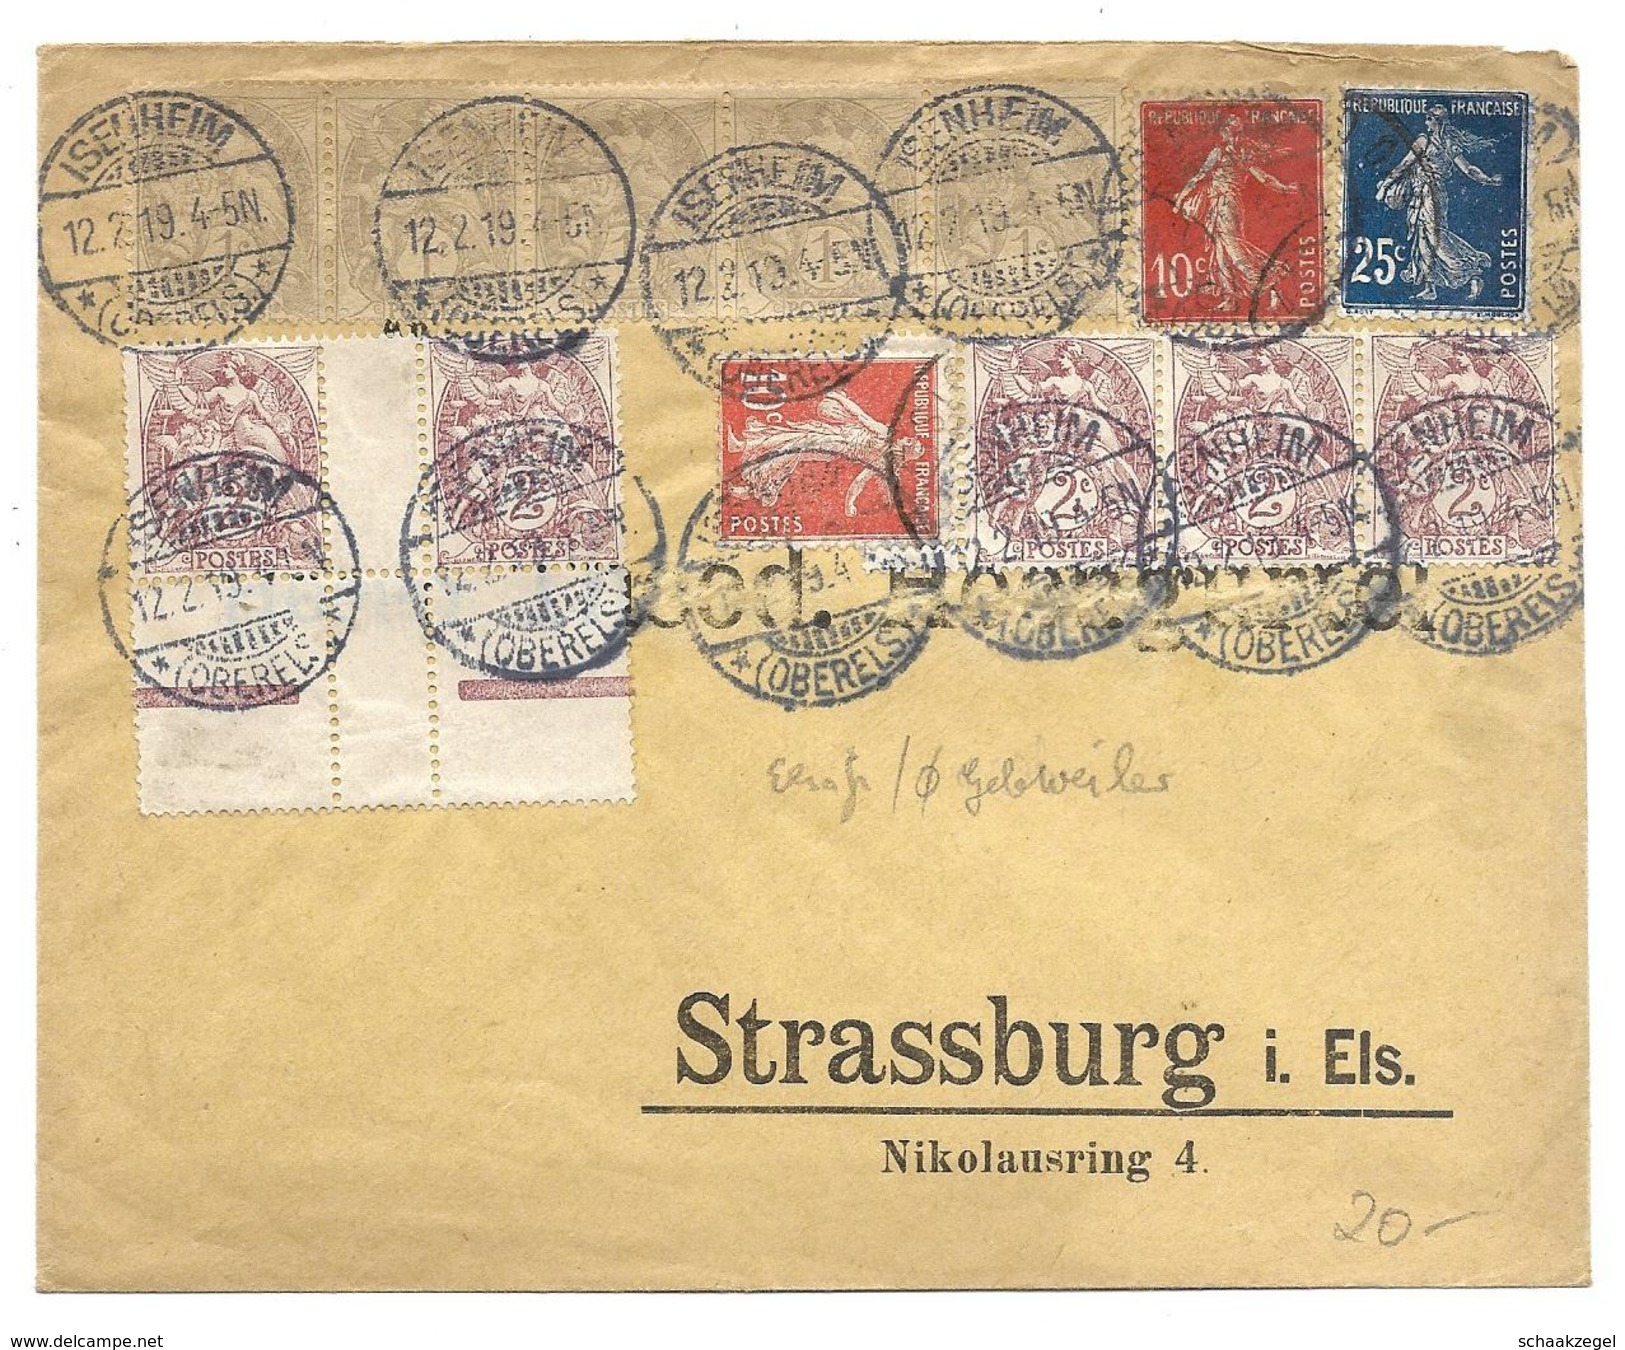 Elsass, Alsace,   	Briefumsvhlag Von Isenheim Nach Strassburg, 12-2-1919			170422 - Covers & Documents